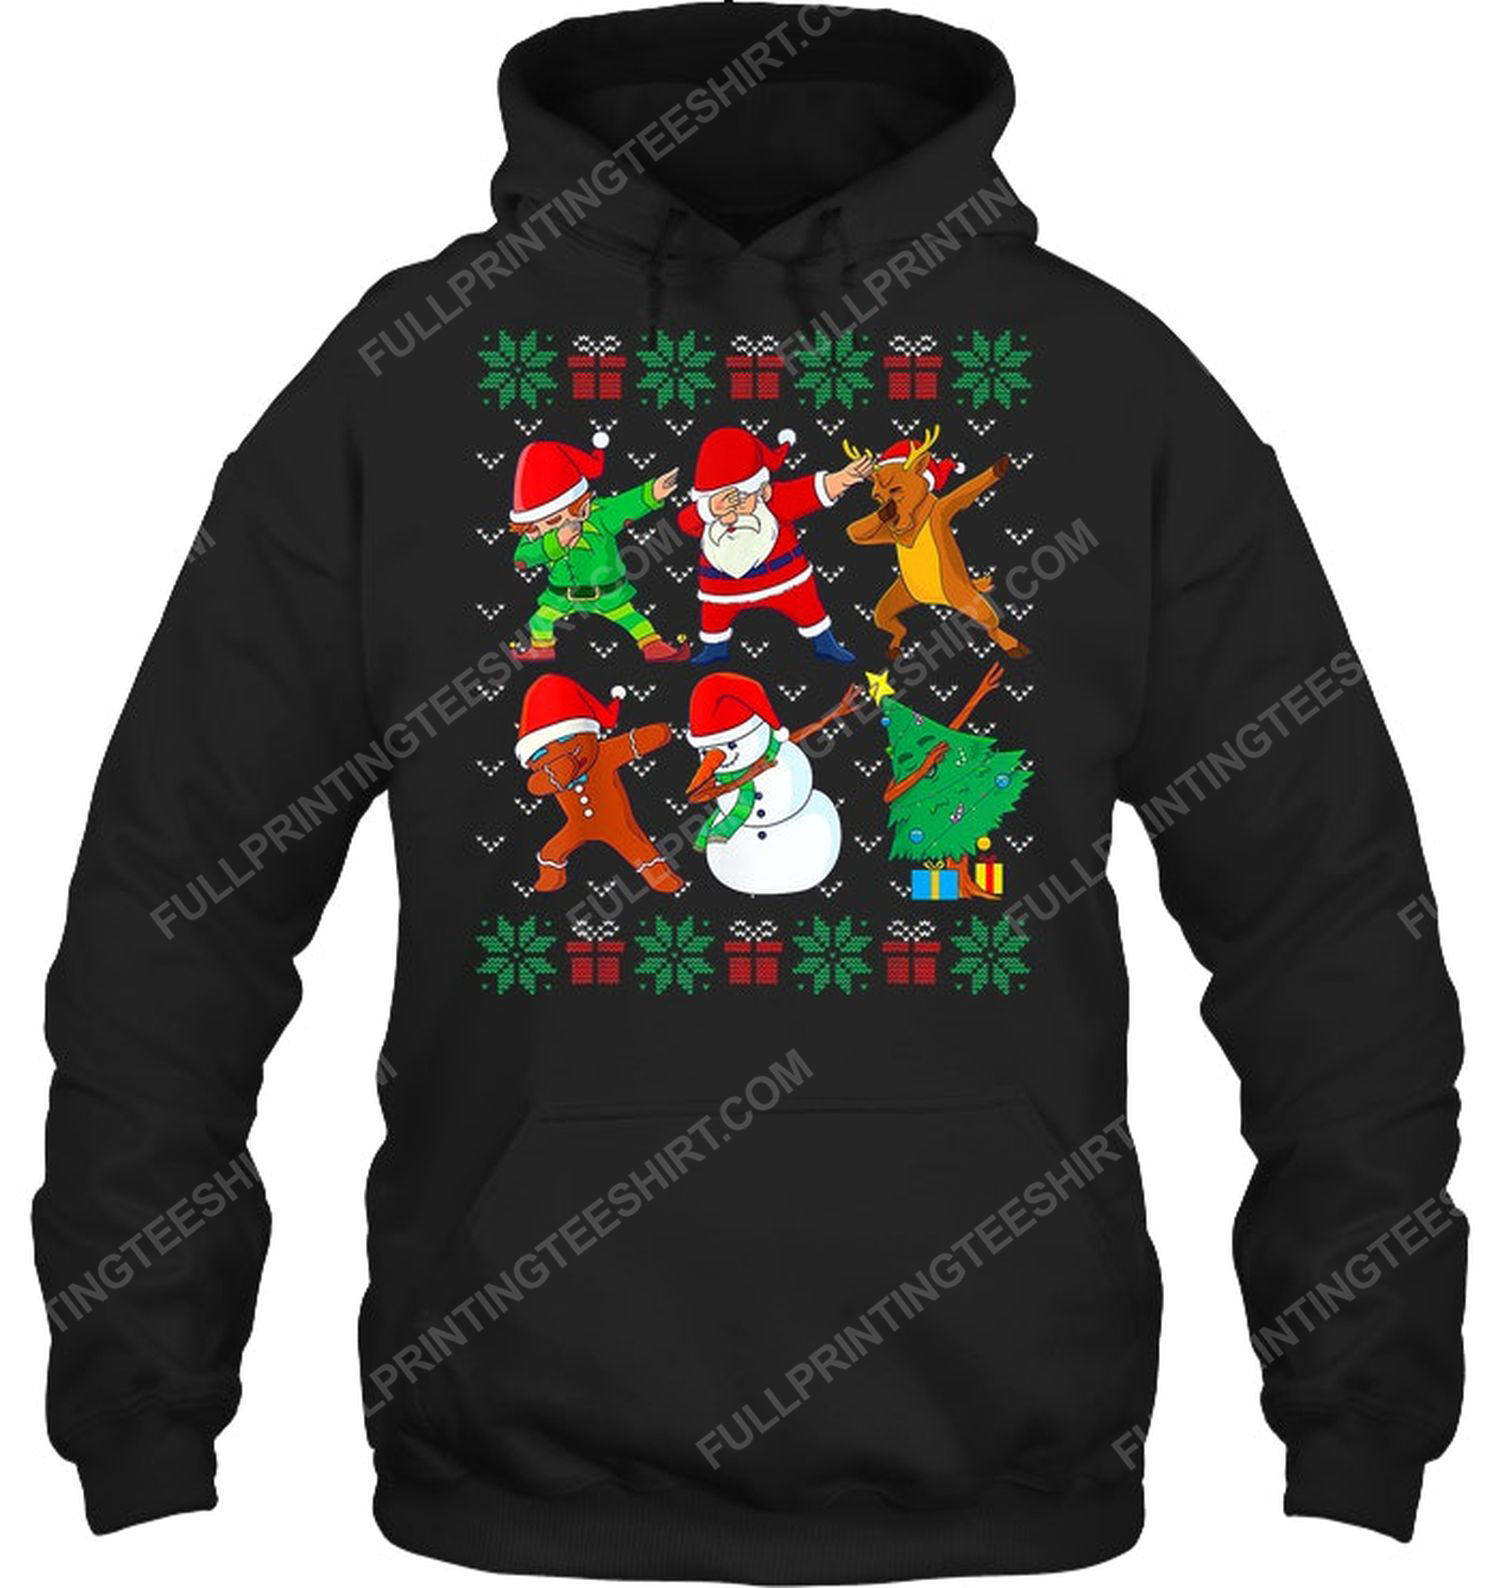 Santa dab squad christmas night hoodie